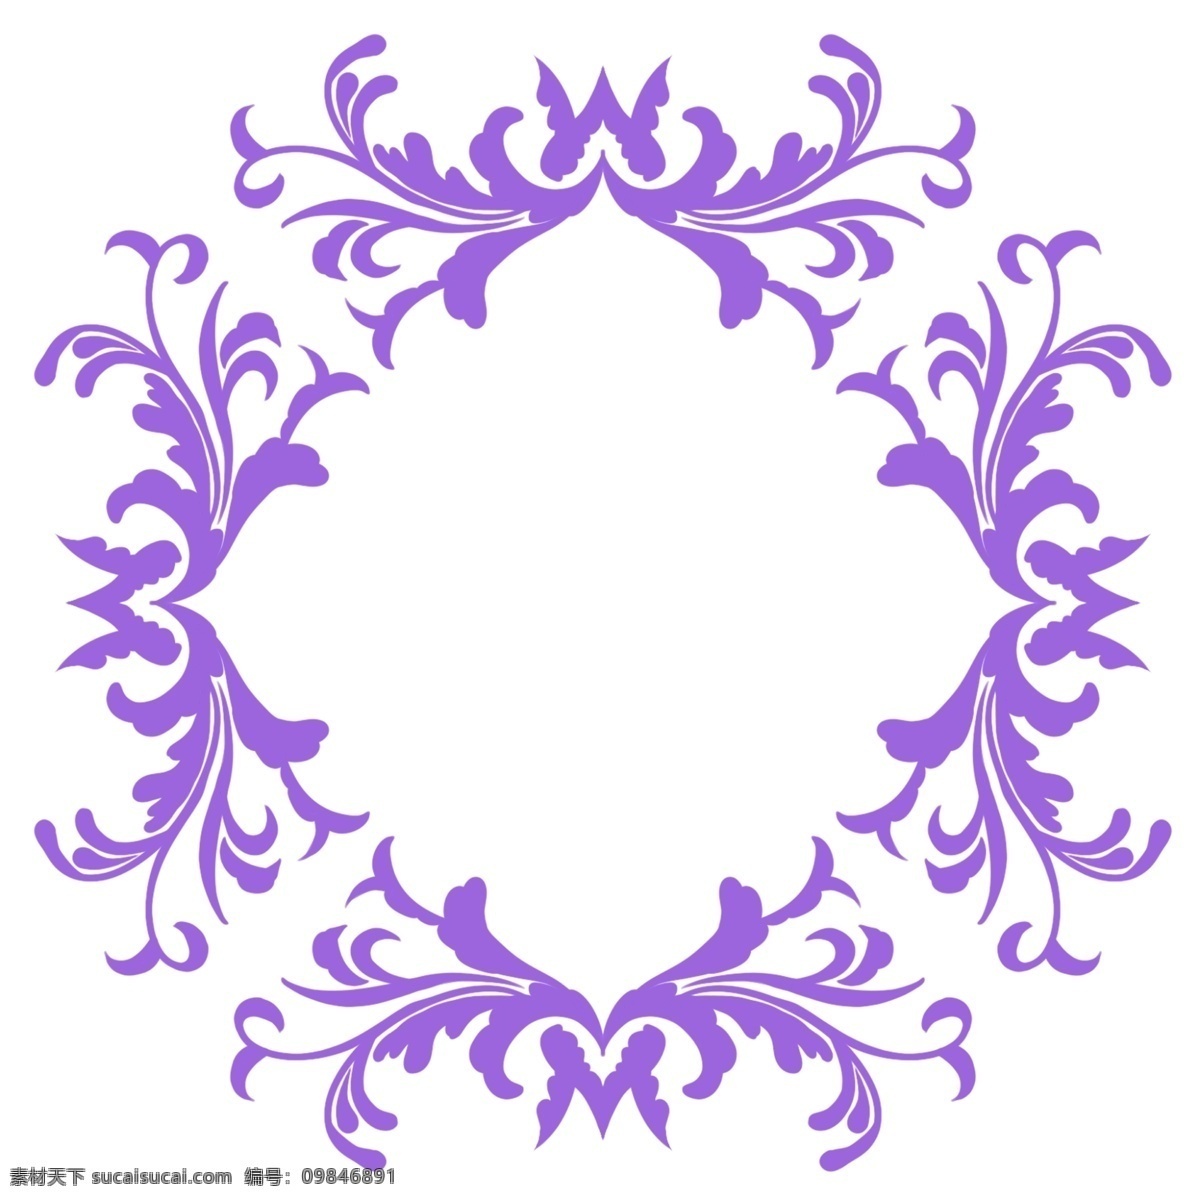 紫色 边框 装饰 插画 植物边框 紫色的边框 漂亮的边框 创意边框 立体边框 精美边框 卡通边框